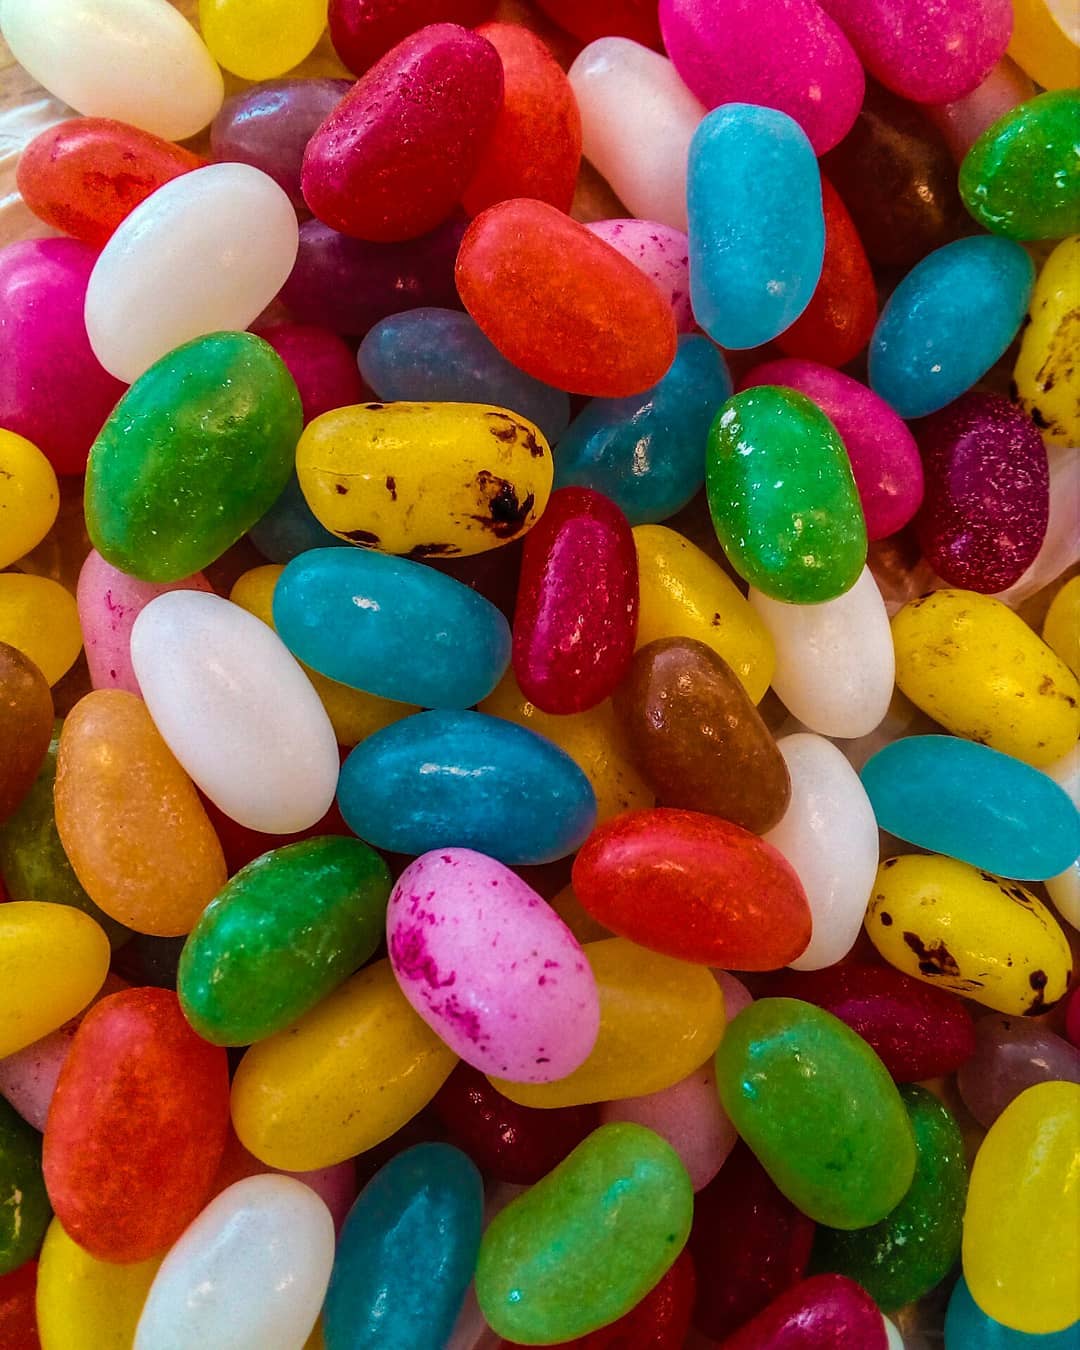 jelly bean, jelly beans, jelly, bean, beans, fact, facts, fun, mykitc...